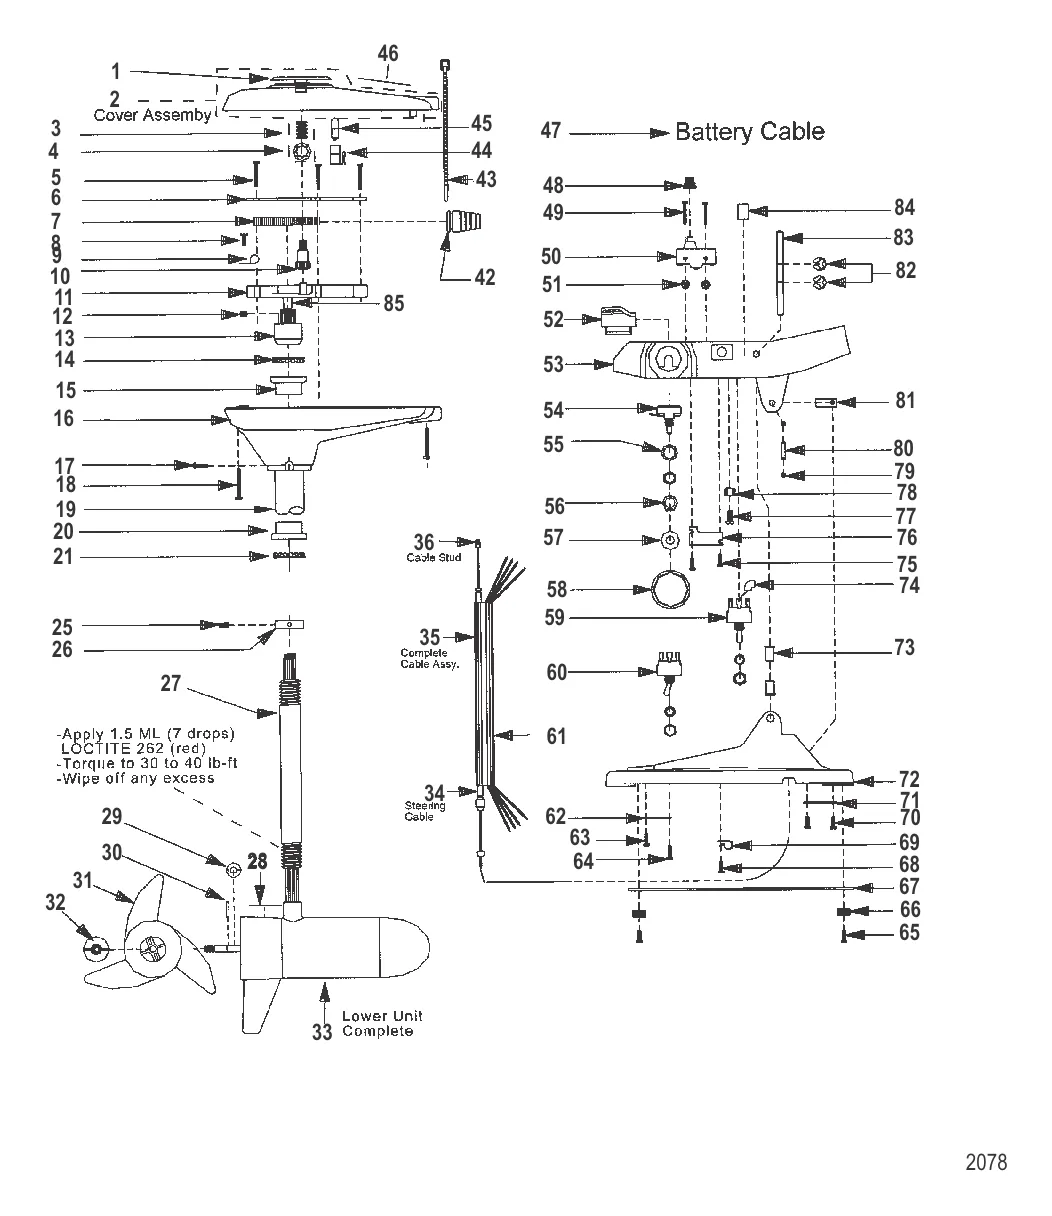 Двигатель для тралового лова в сборе (Модель 767P) (24 В)